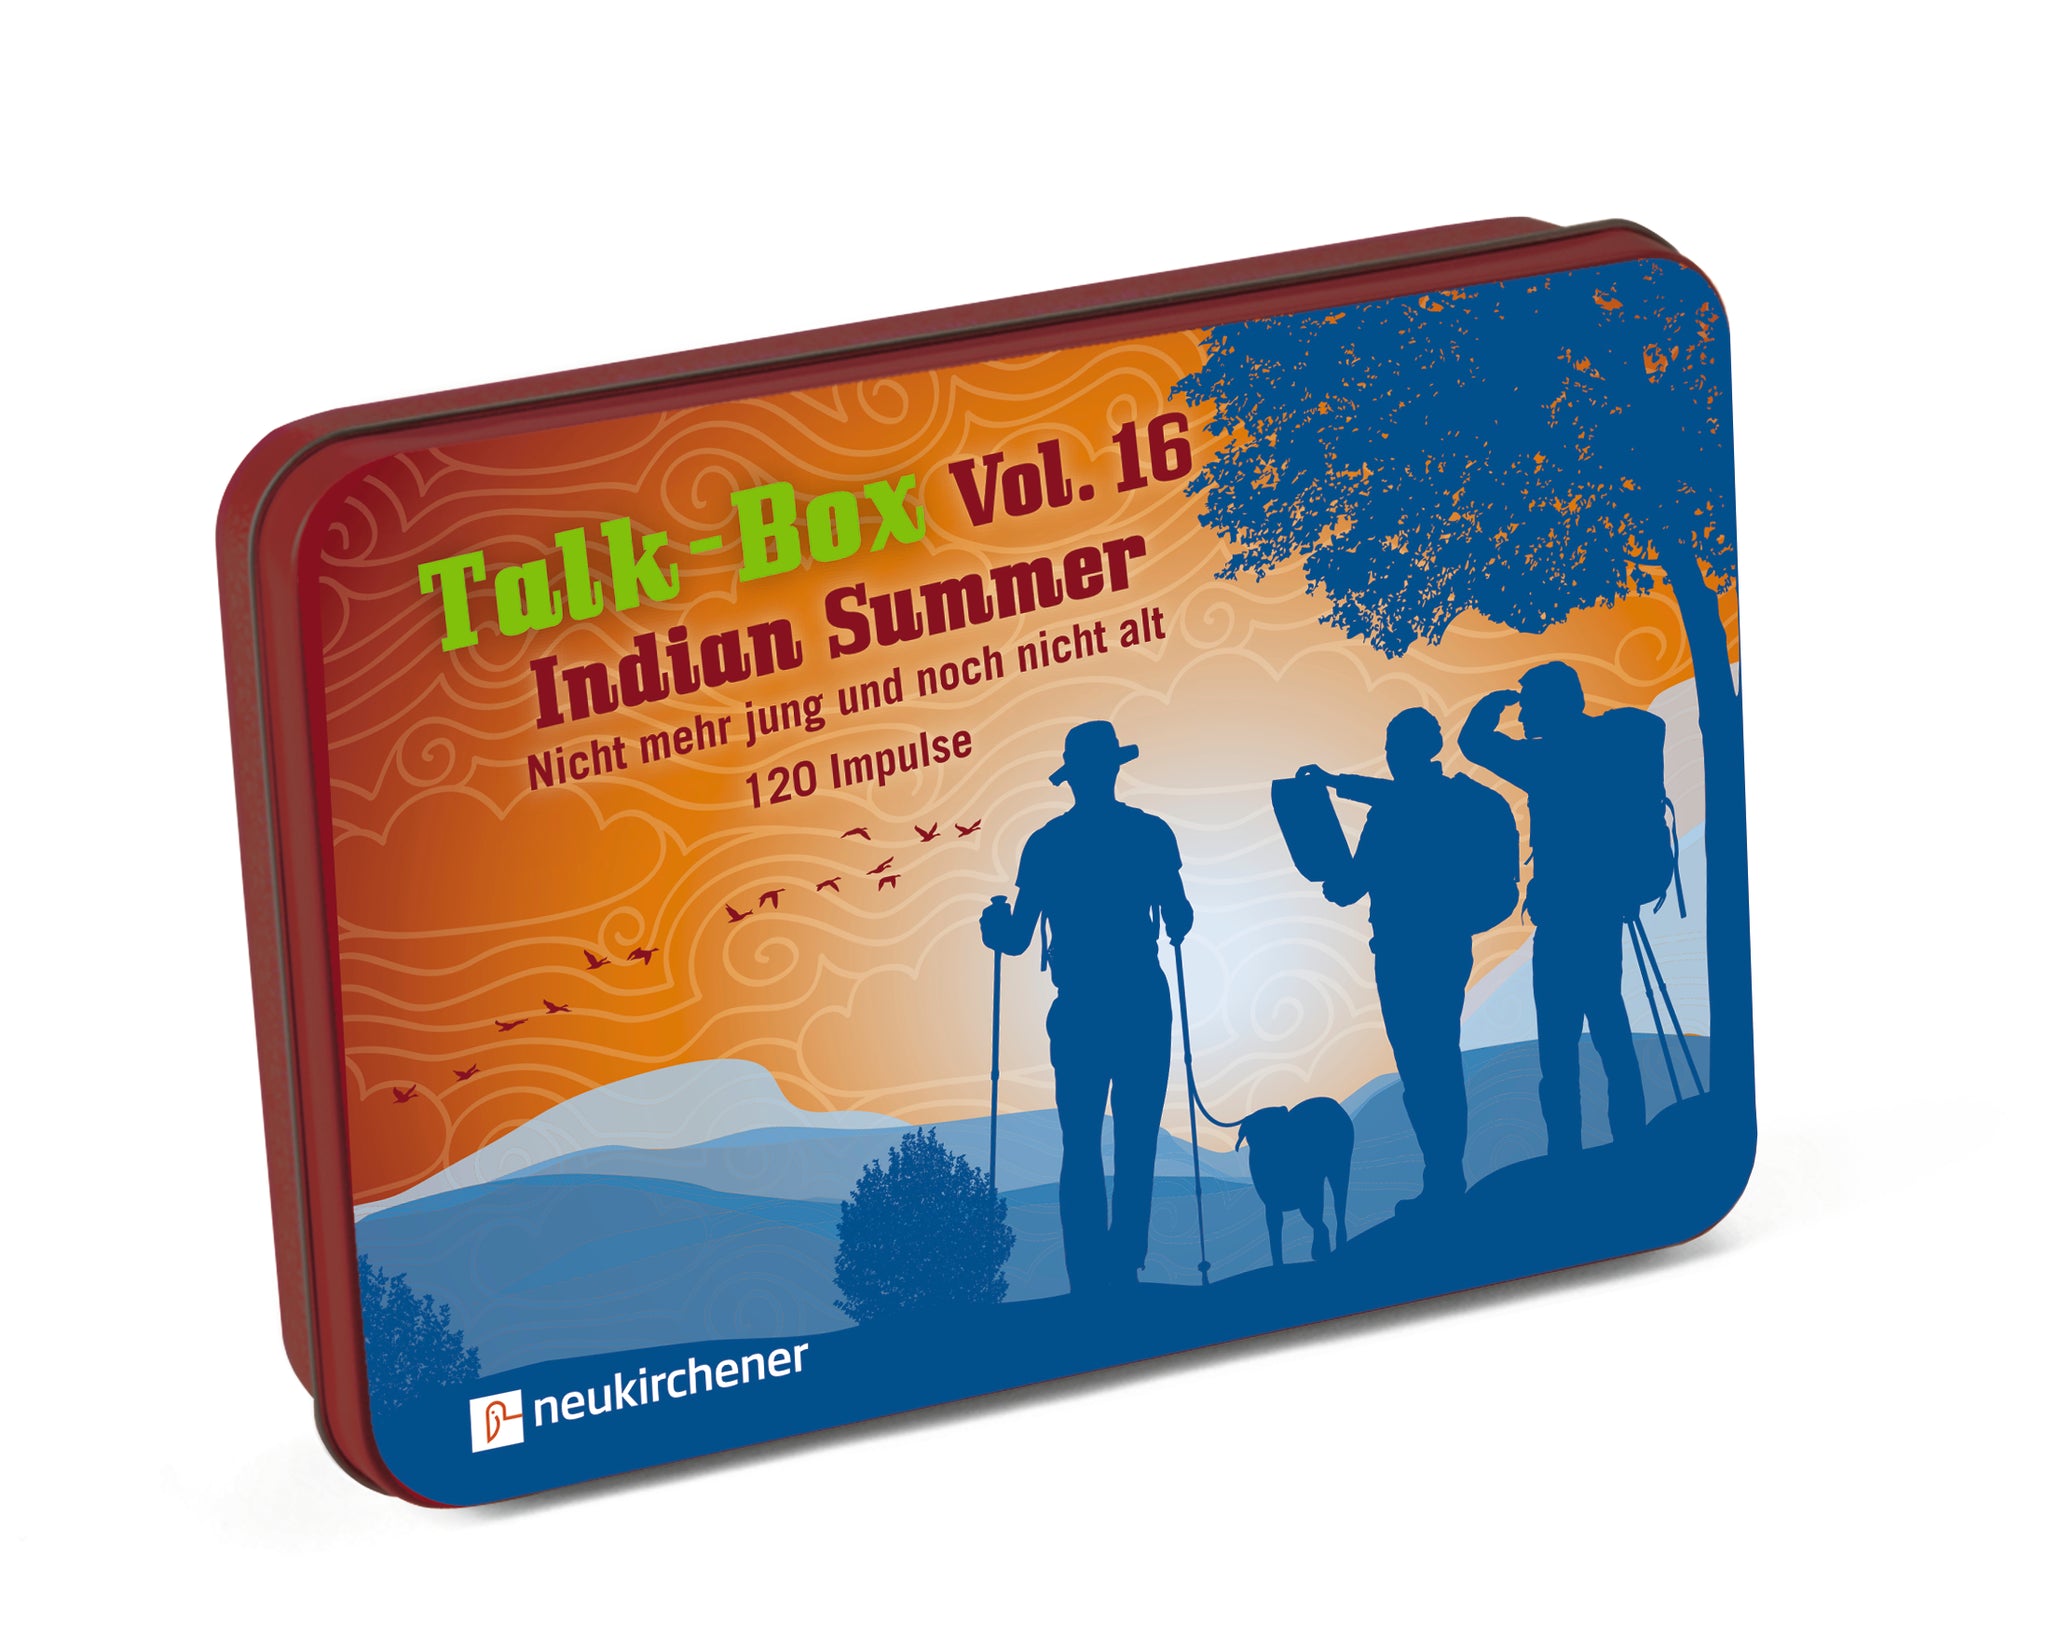 Talk-Box Vol. 16 – Indian Summer // Nicht mehr jung und noch nicht alt